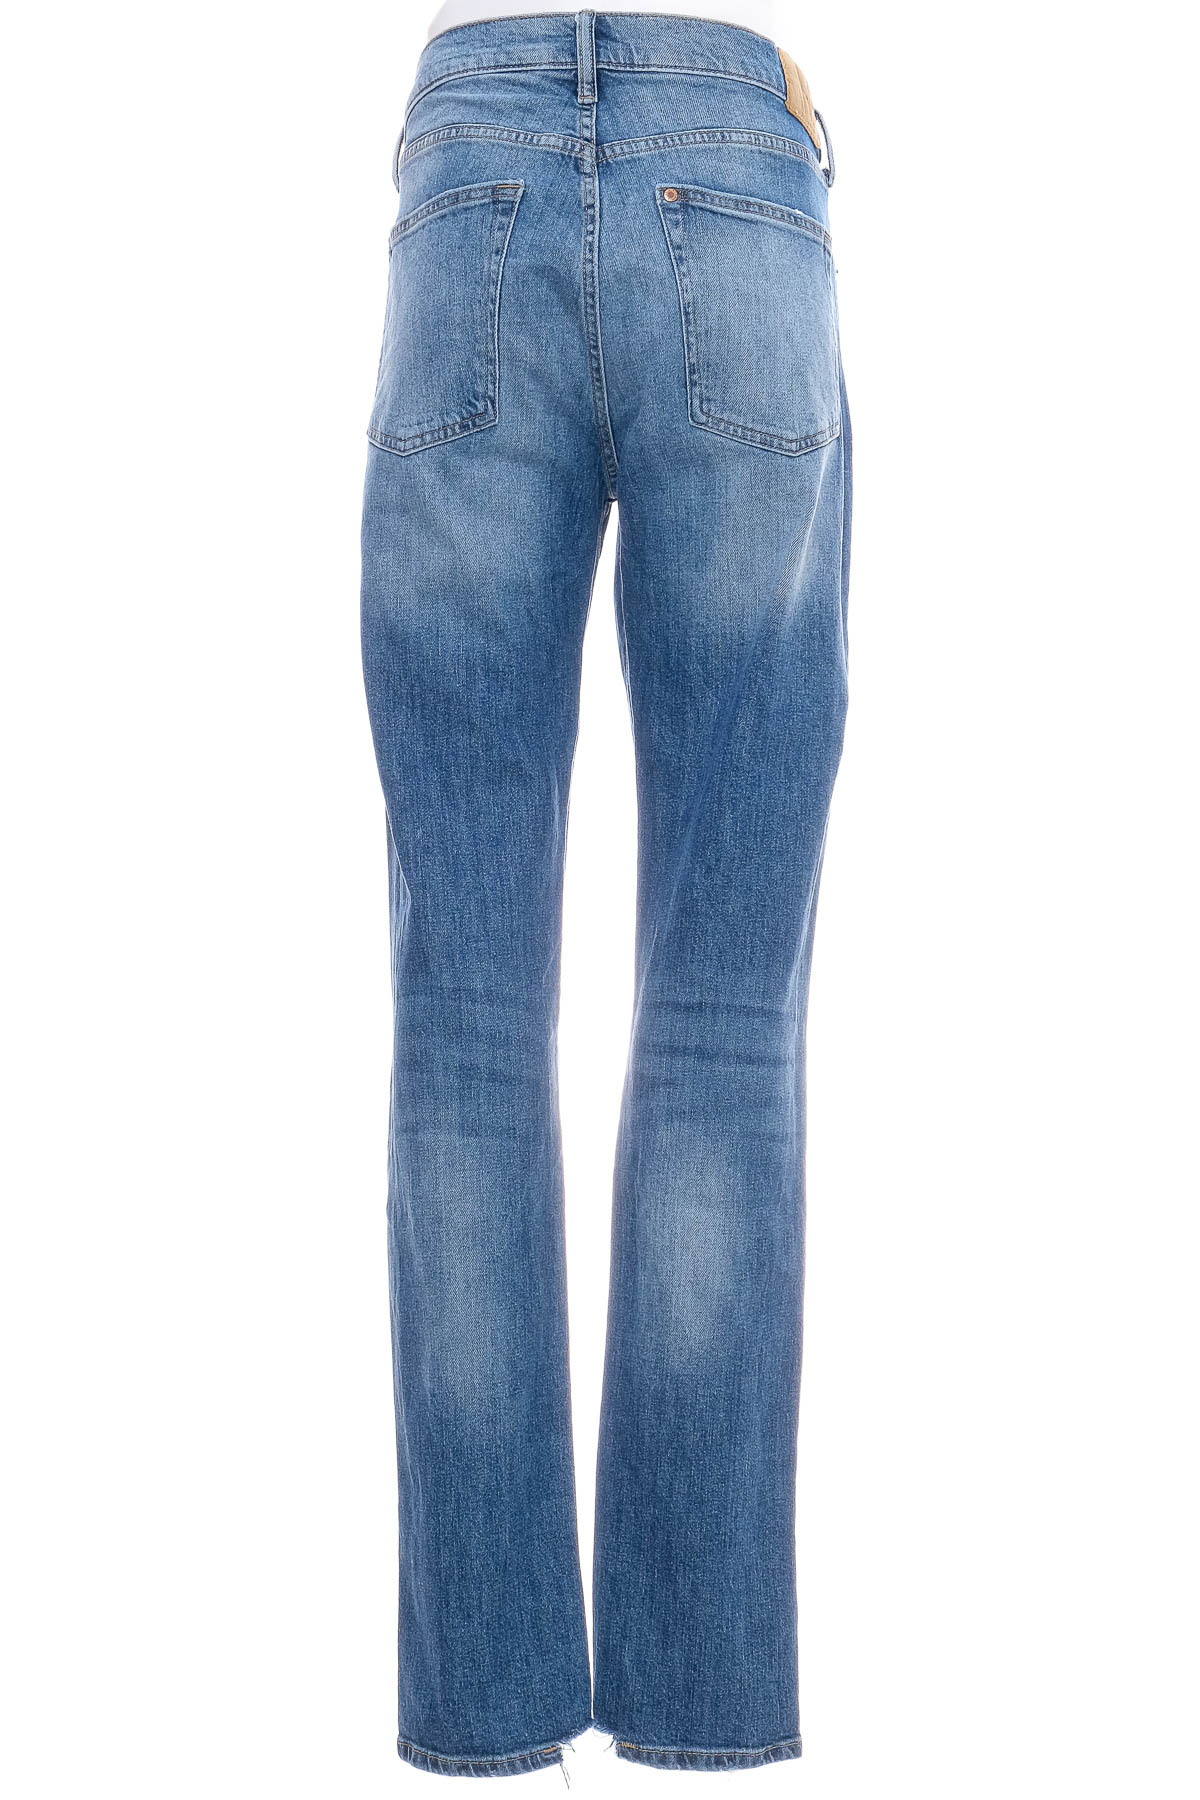 Jeans pentru bărbăți - H&M - 1